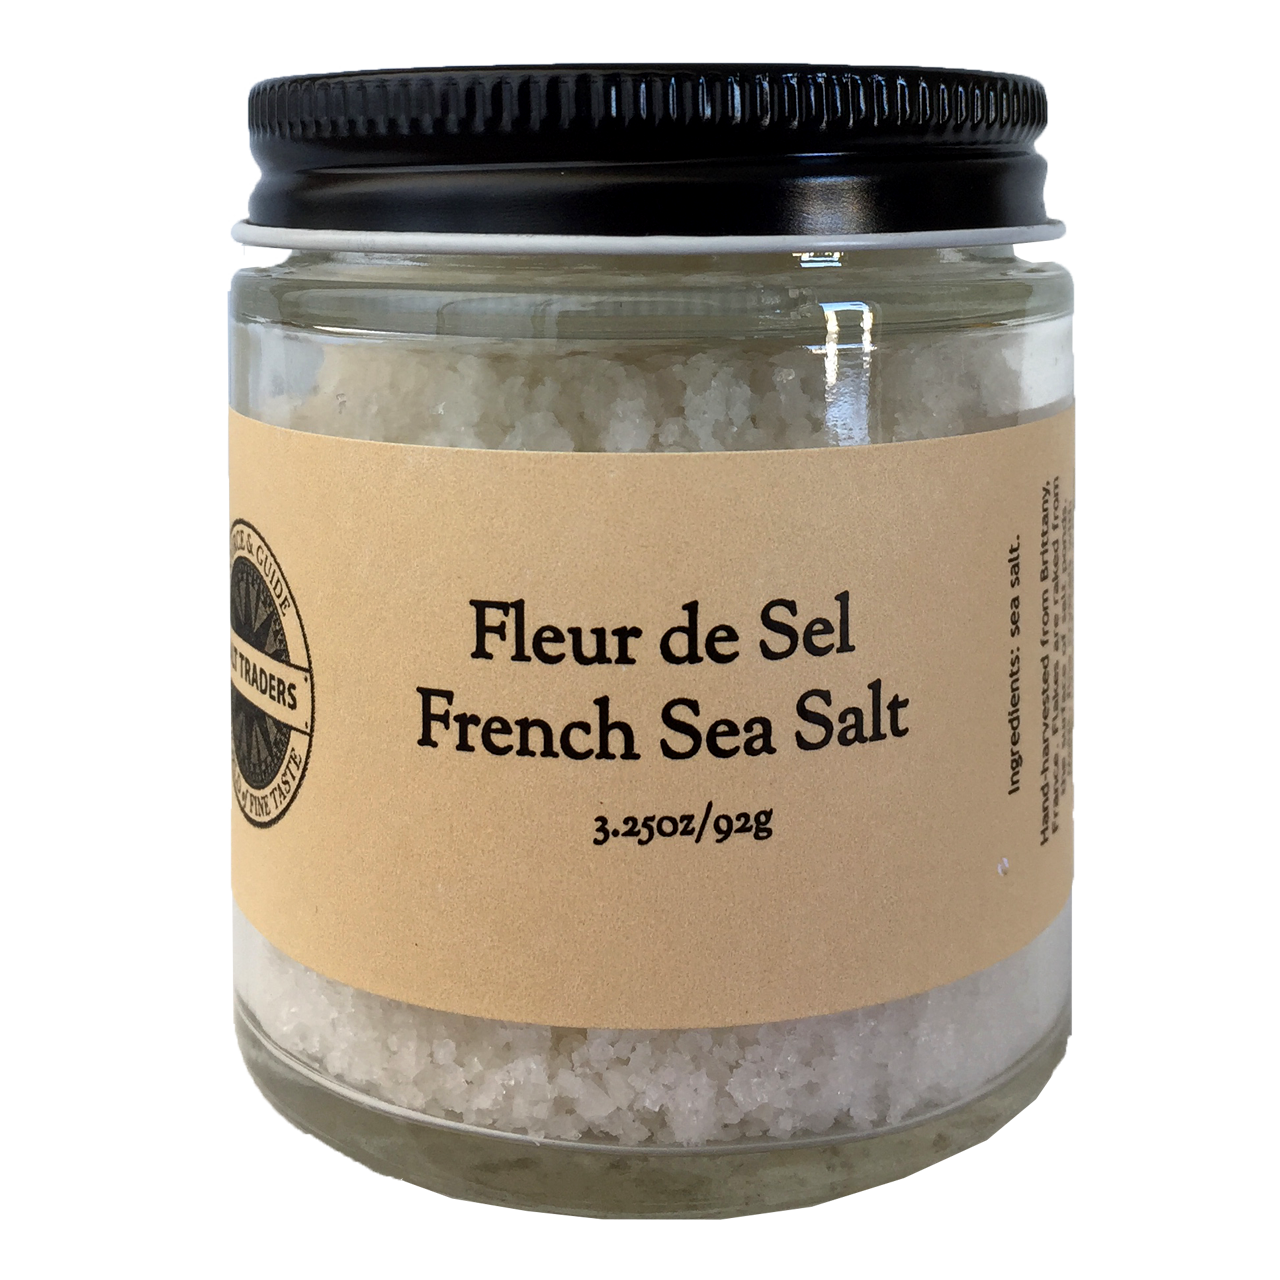 Fleur de Sel French Sea Salt  Whole Spice – Whole Spice, Inc.